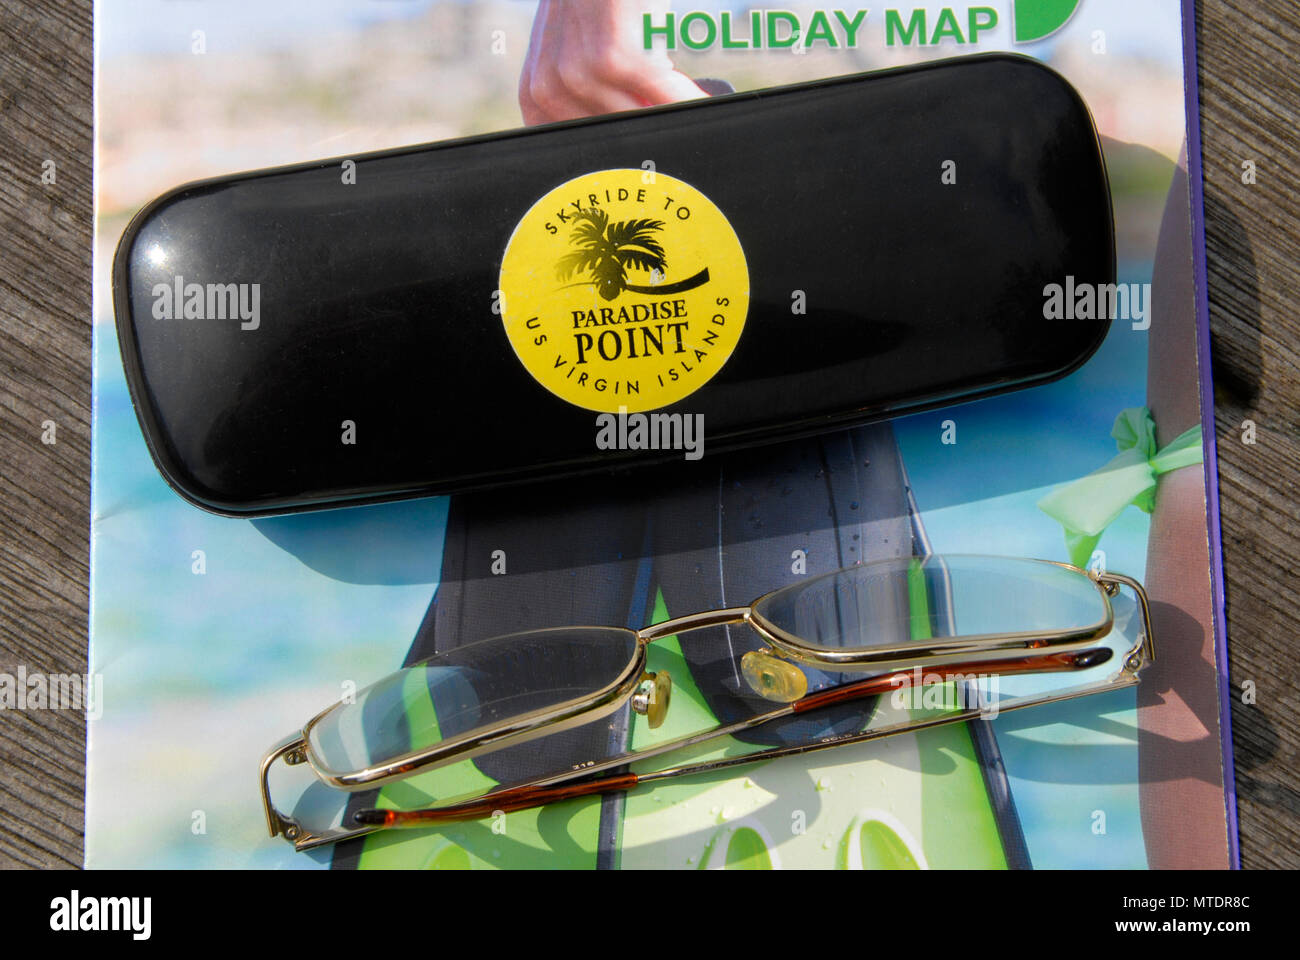 Adesivo di Souvenir per vacanza ai Caraibi su occhiali caso Foto Stock